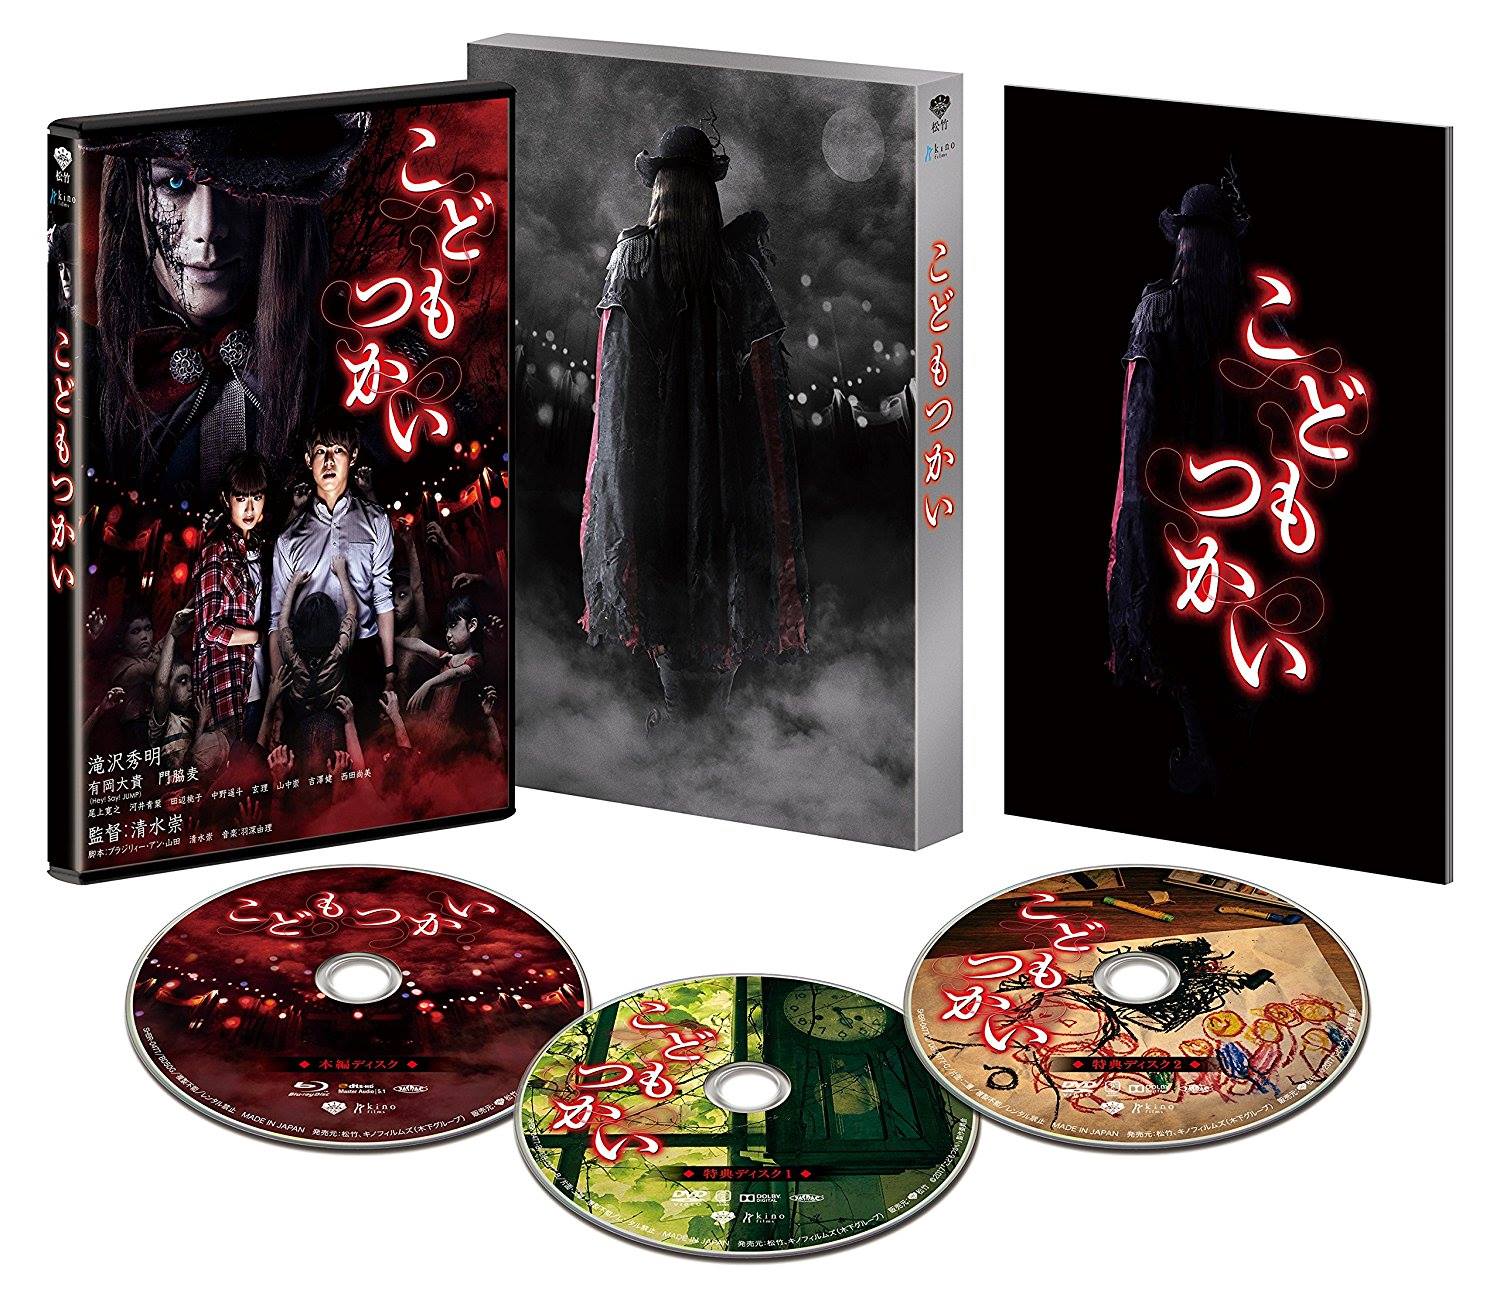 Kodomo Tsukai DVD & Blu-ray release information